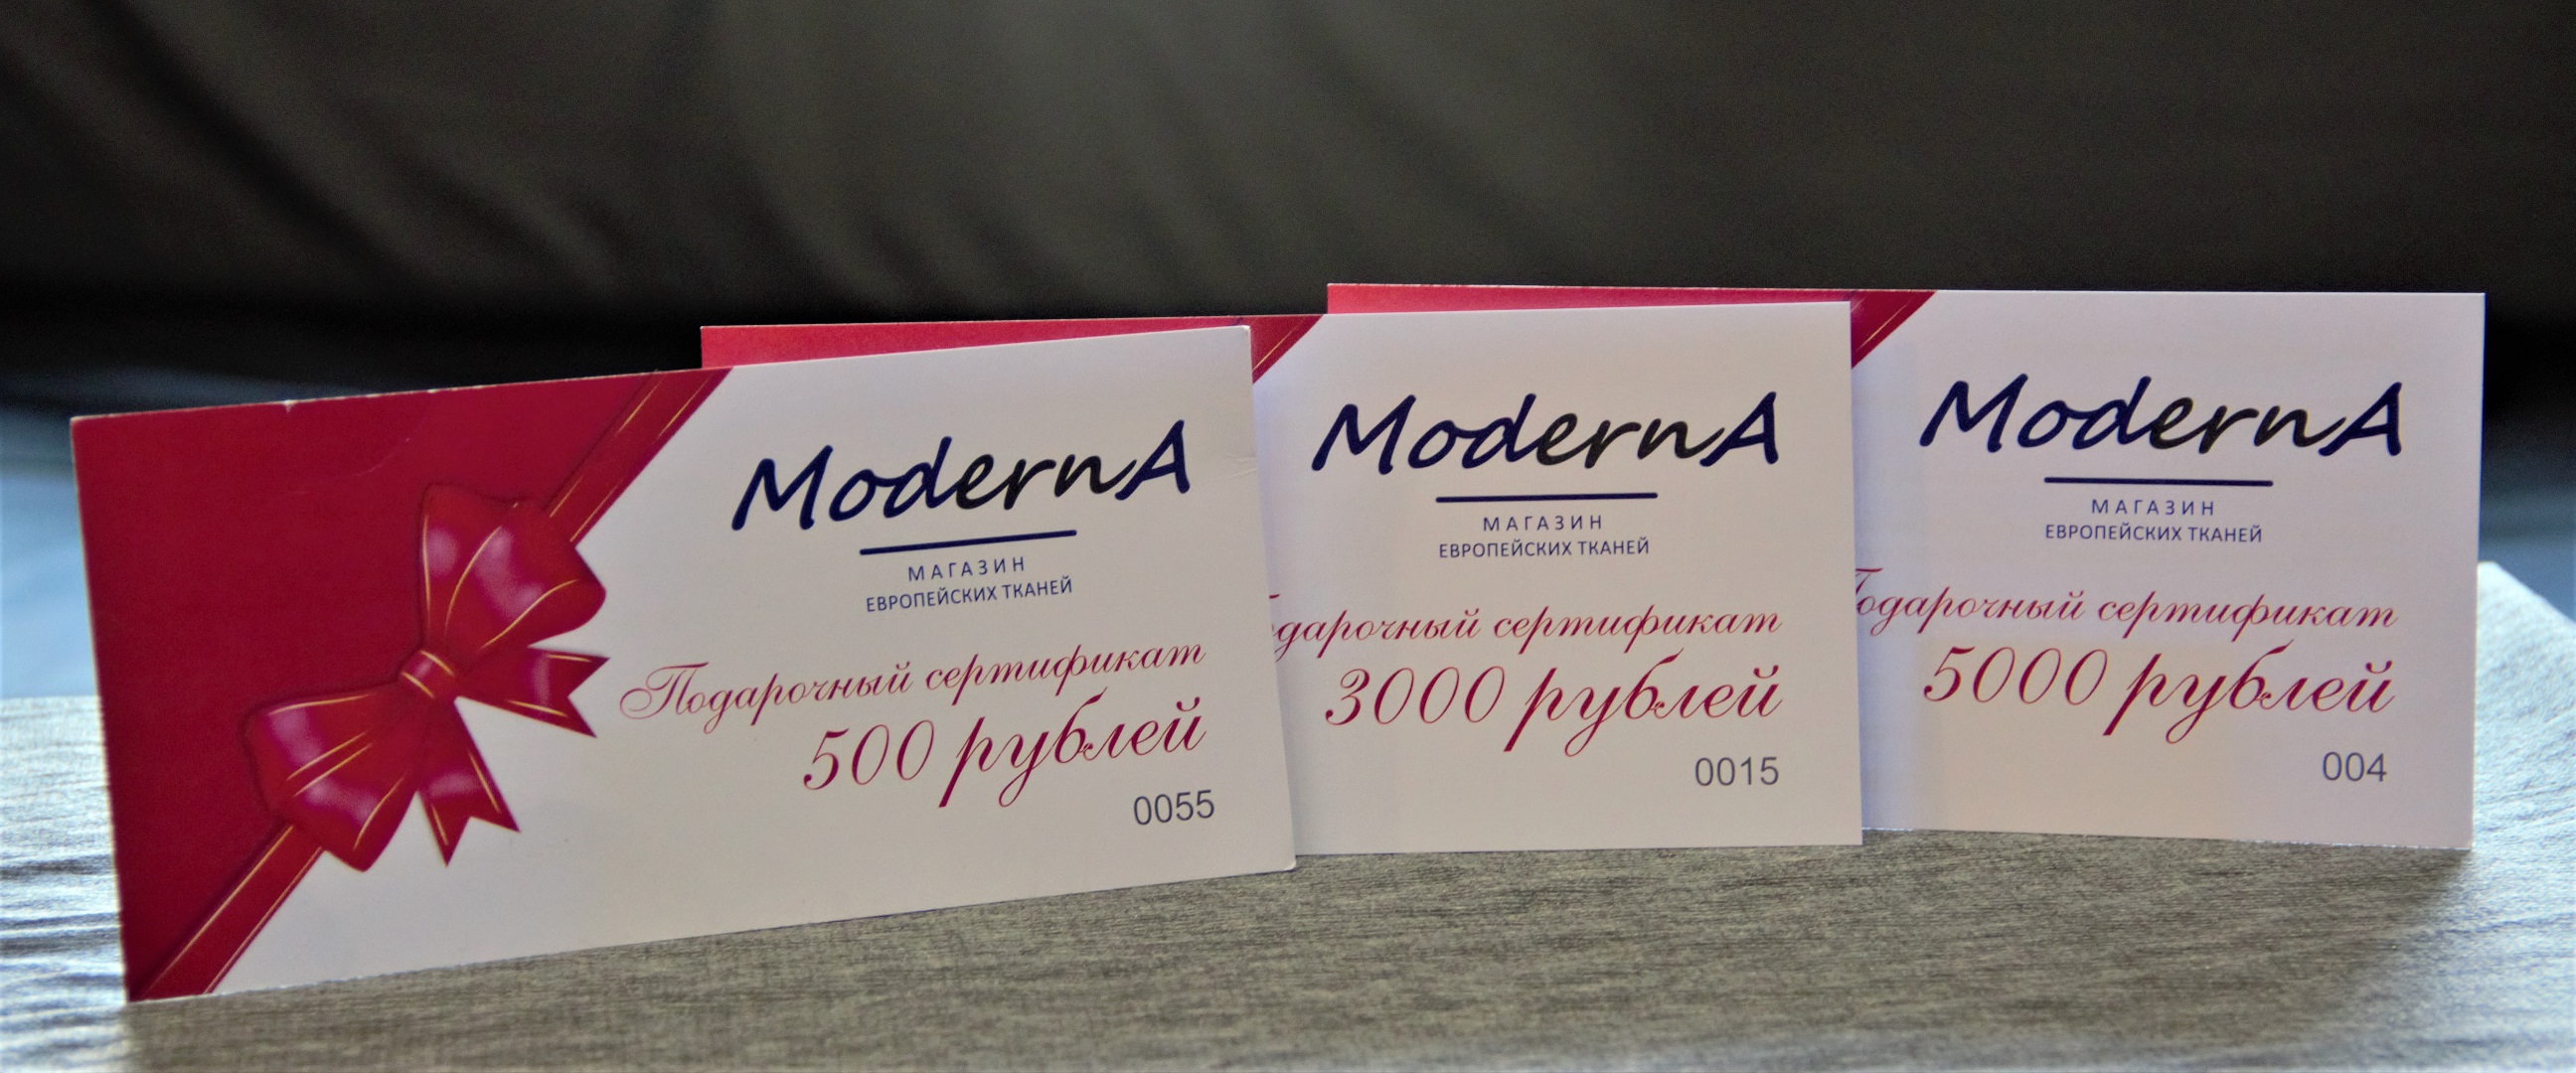 Подарочные сертификаты Moderna